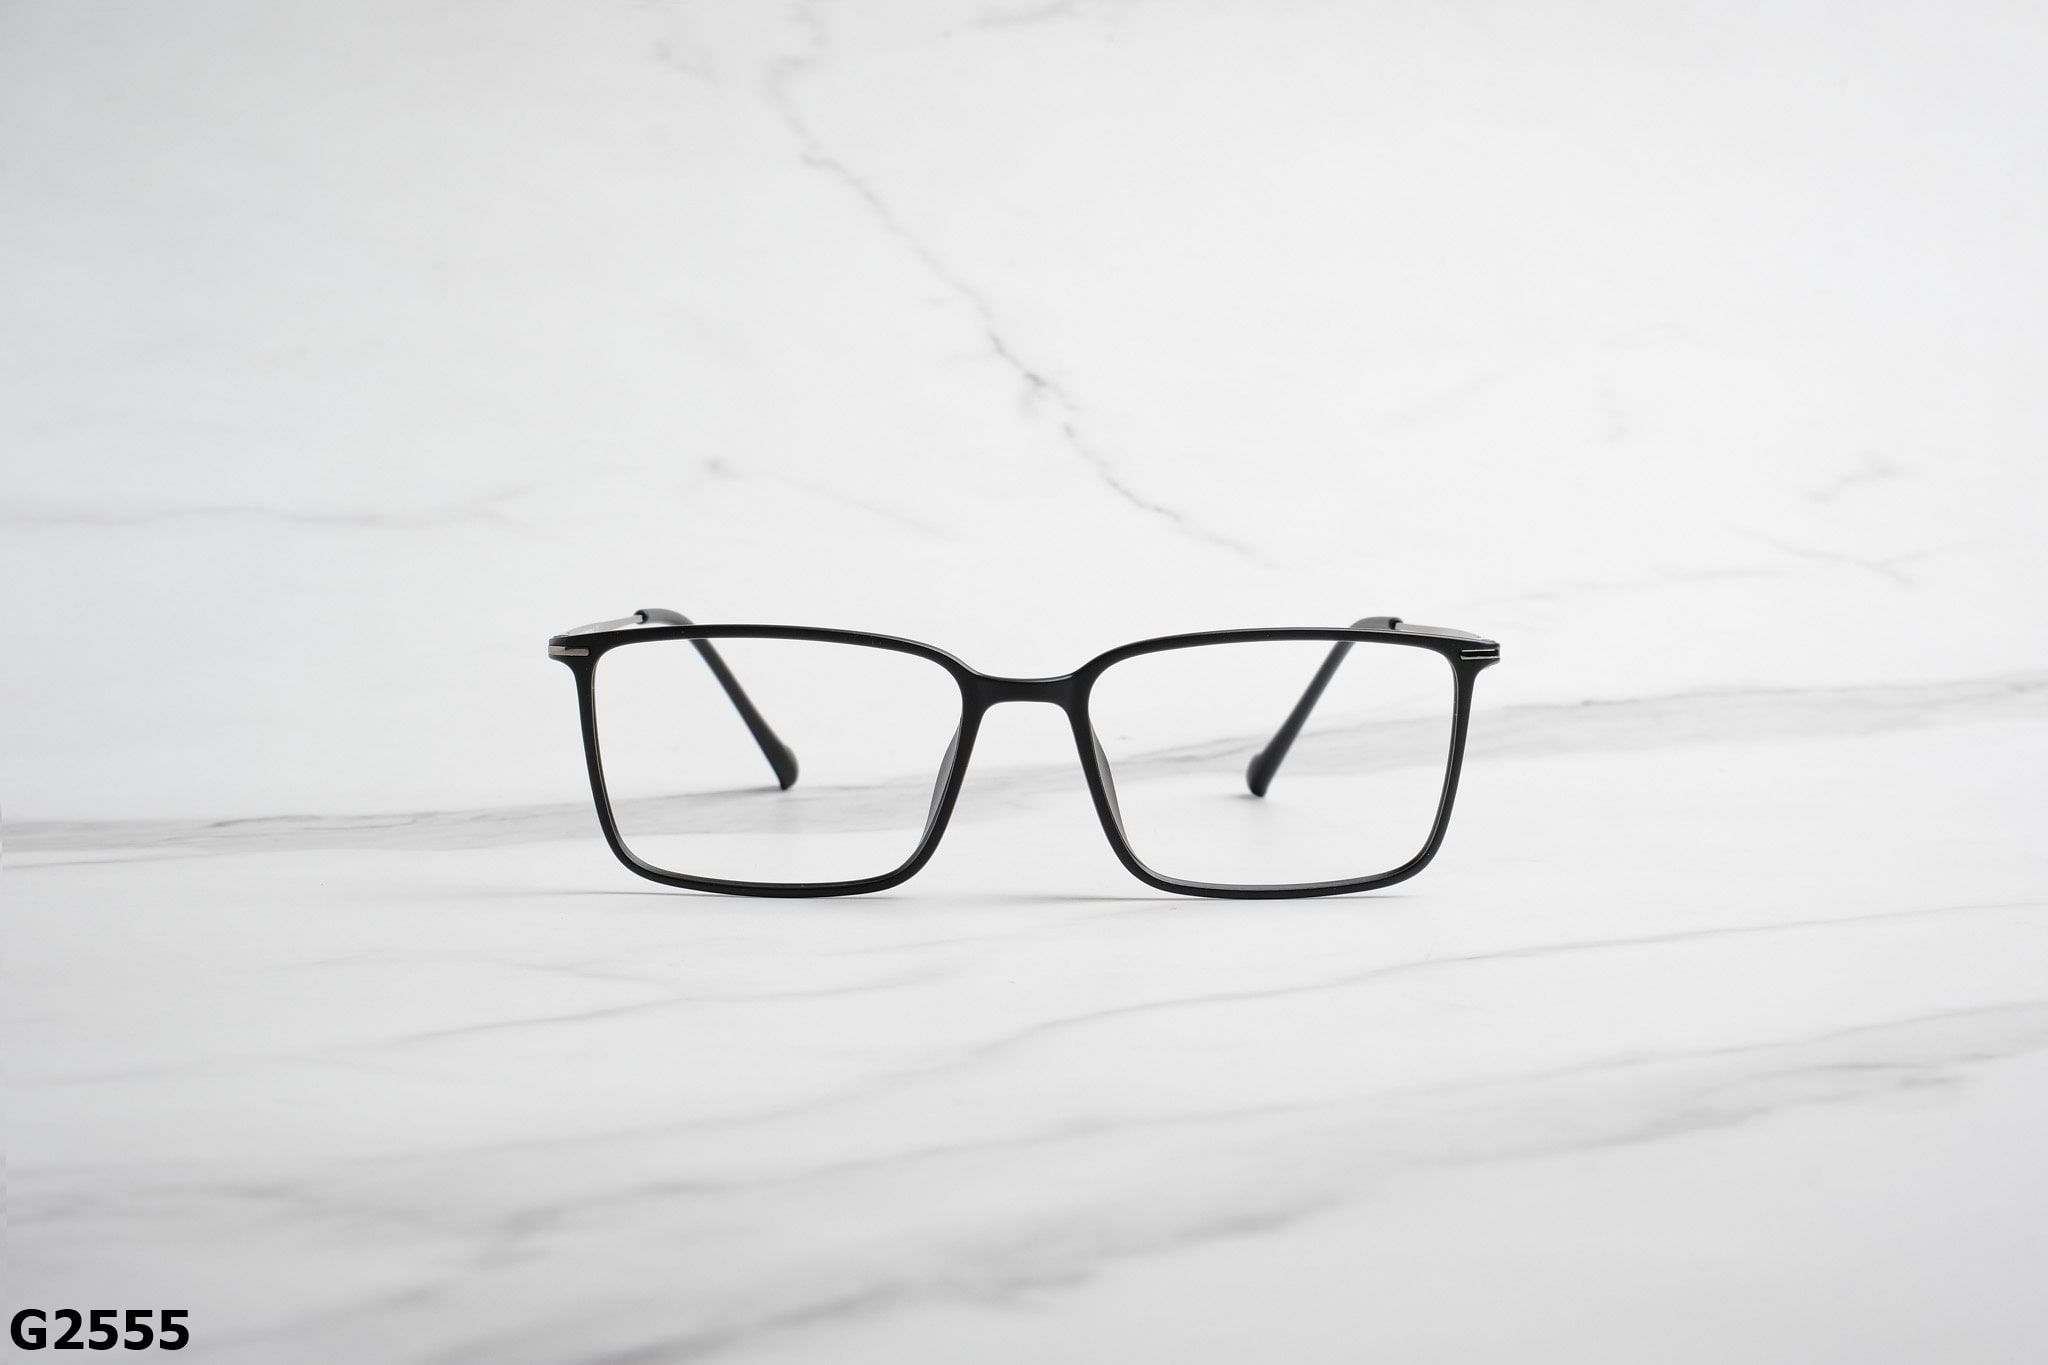  Rex-ton Eyewear - Glasses - G2555 